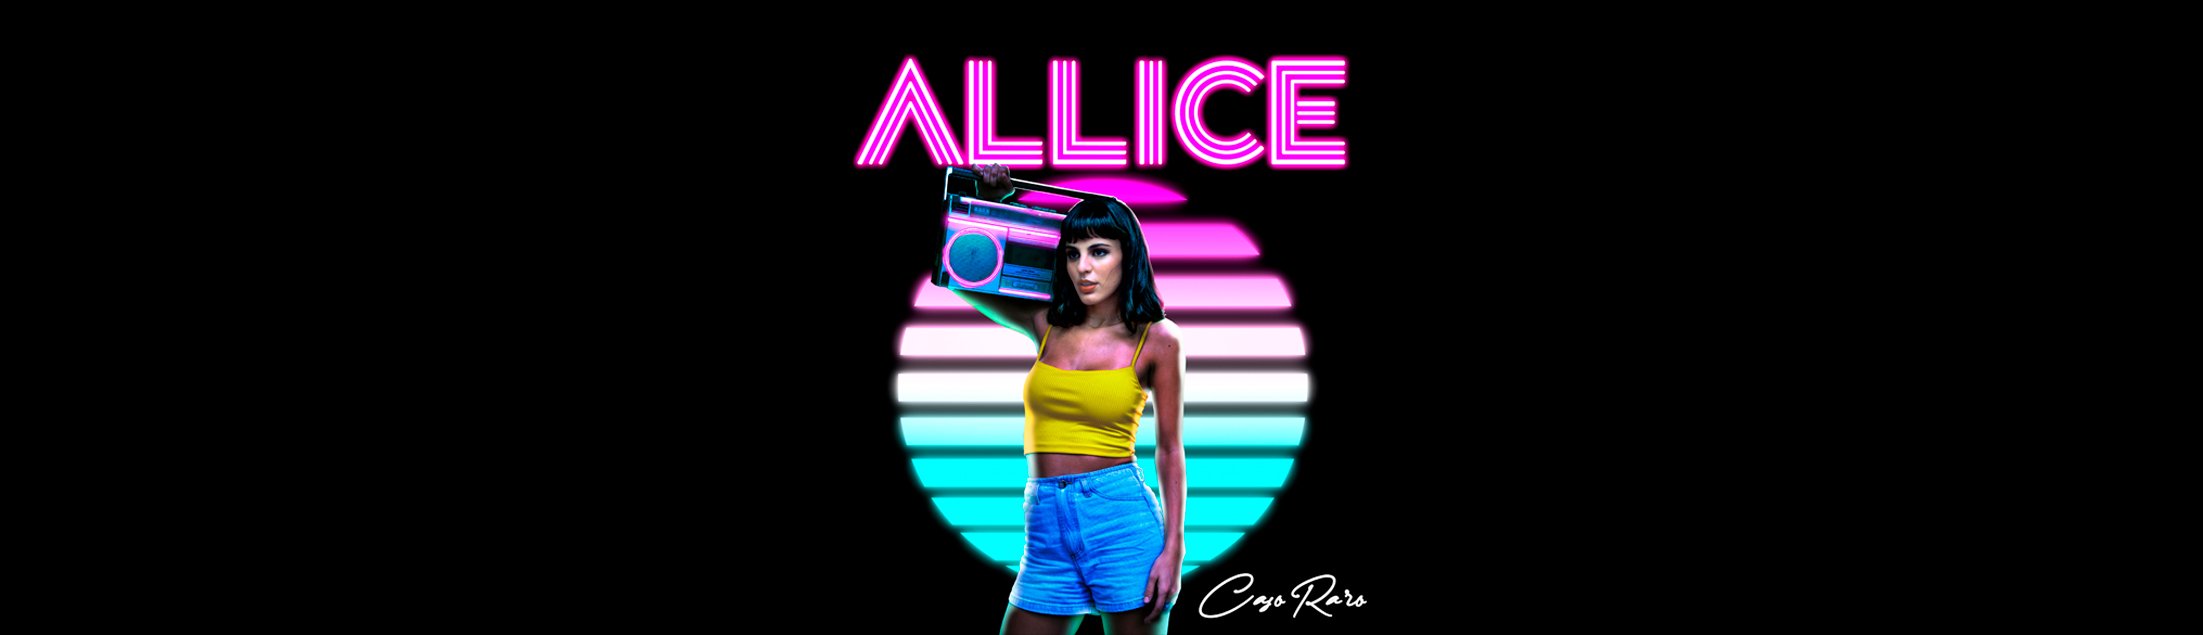 Allice Tirolla lança single e clipe de 'Caso Raro”